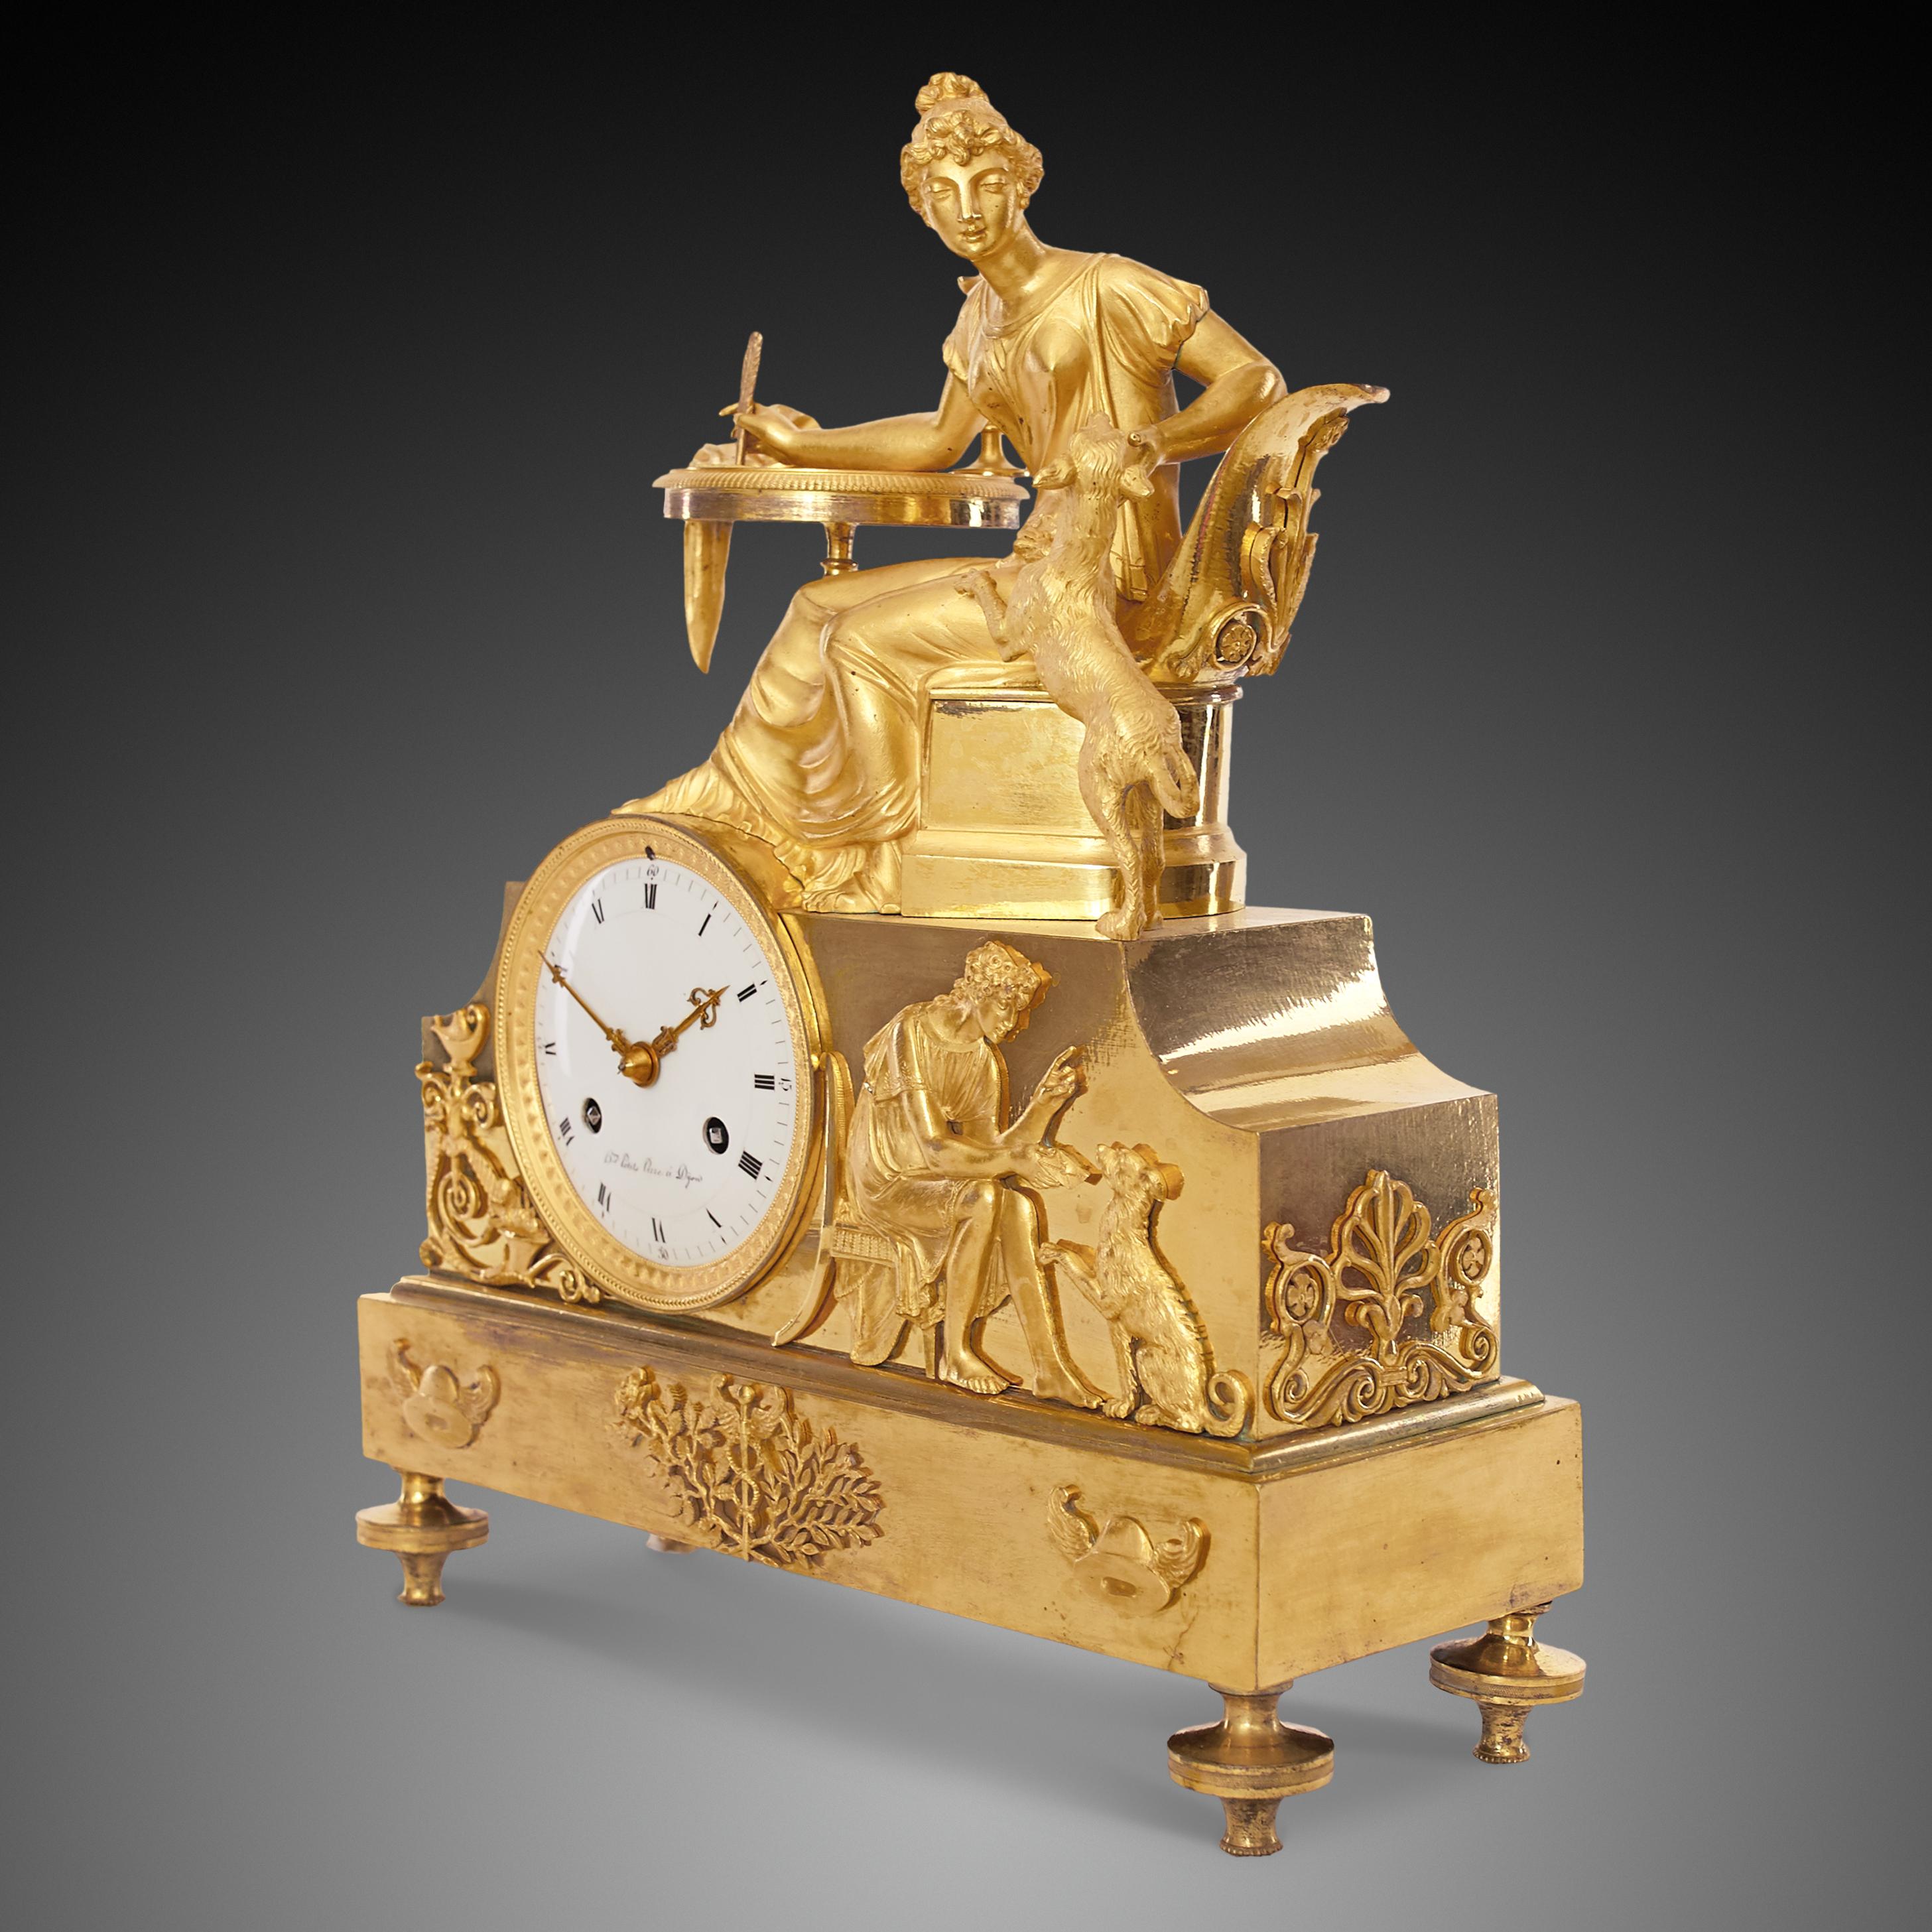 Pendule Empire du début du XIXe siècle en bronze doré, ou en bronze doré, représentant une scène allégorique avec une femme assise à sa table de travail jouant avec son chien, symbole de loyauté. Le groupe est placé au-dessus d'un boîtier surélevé